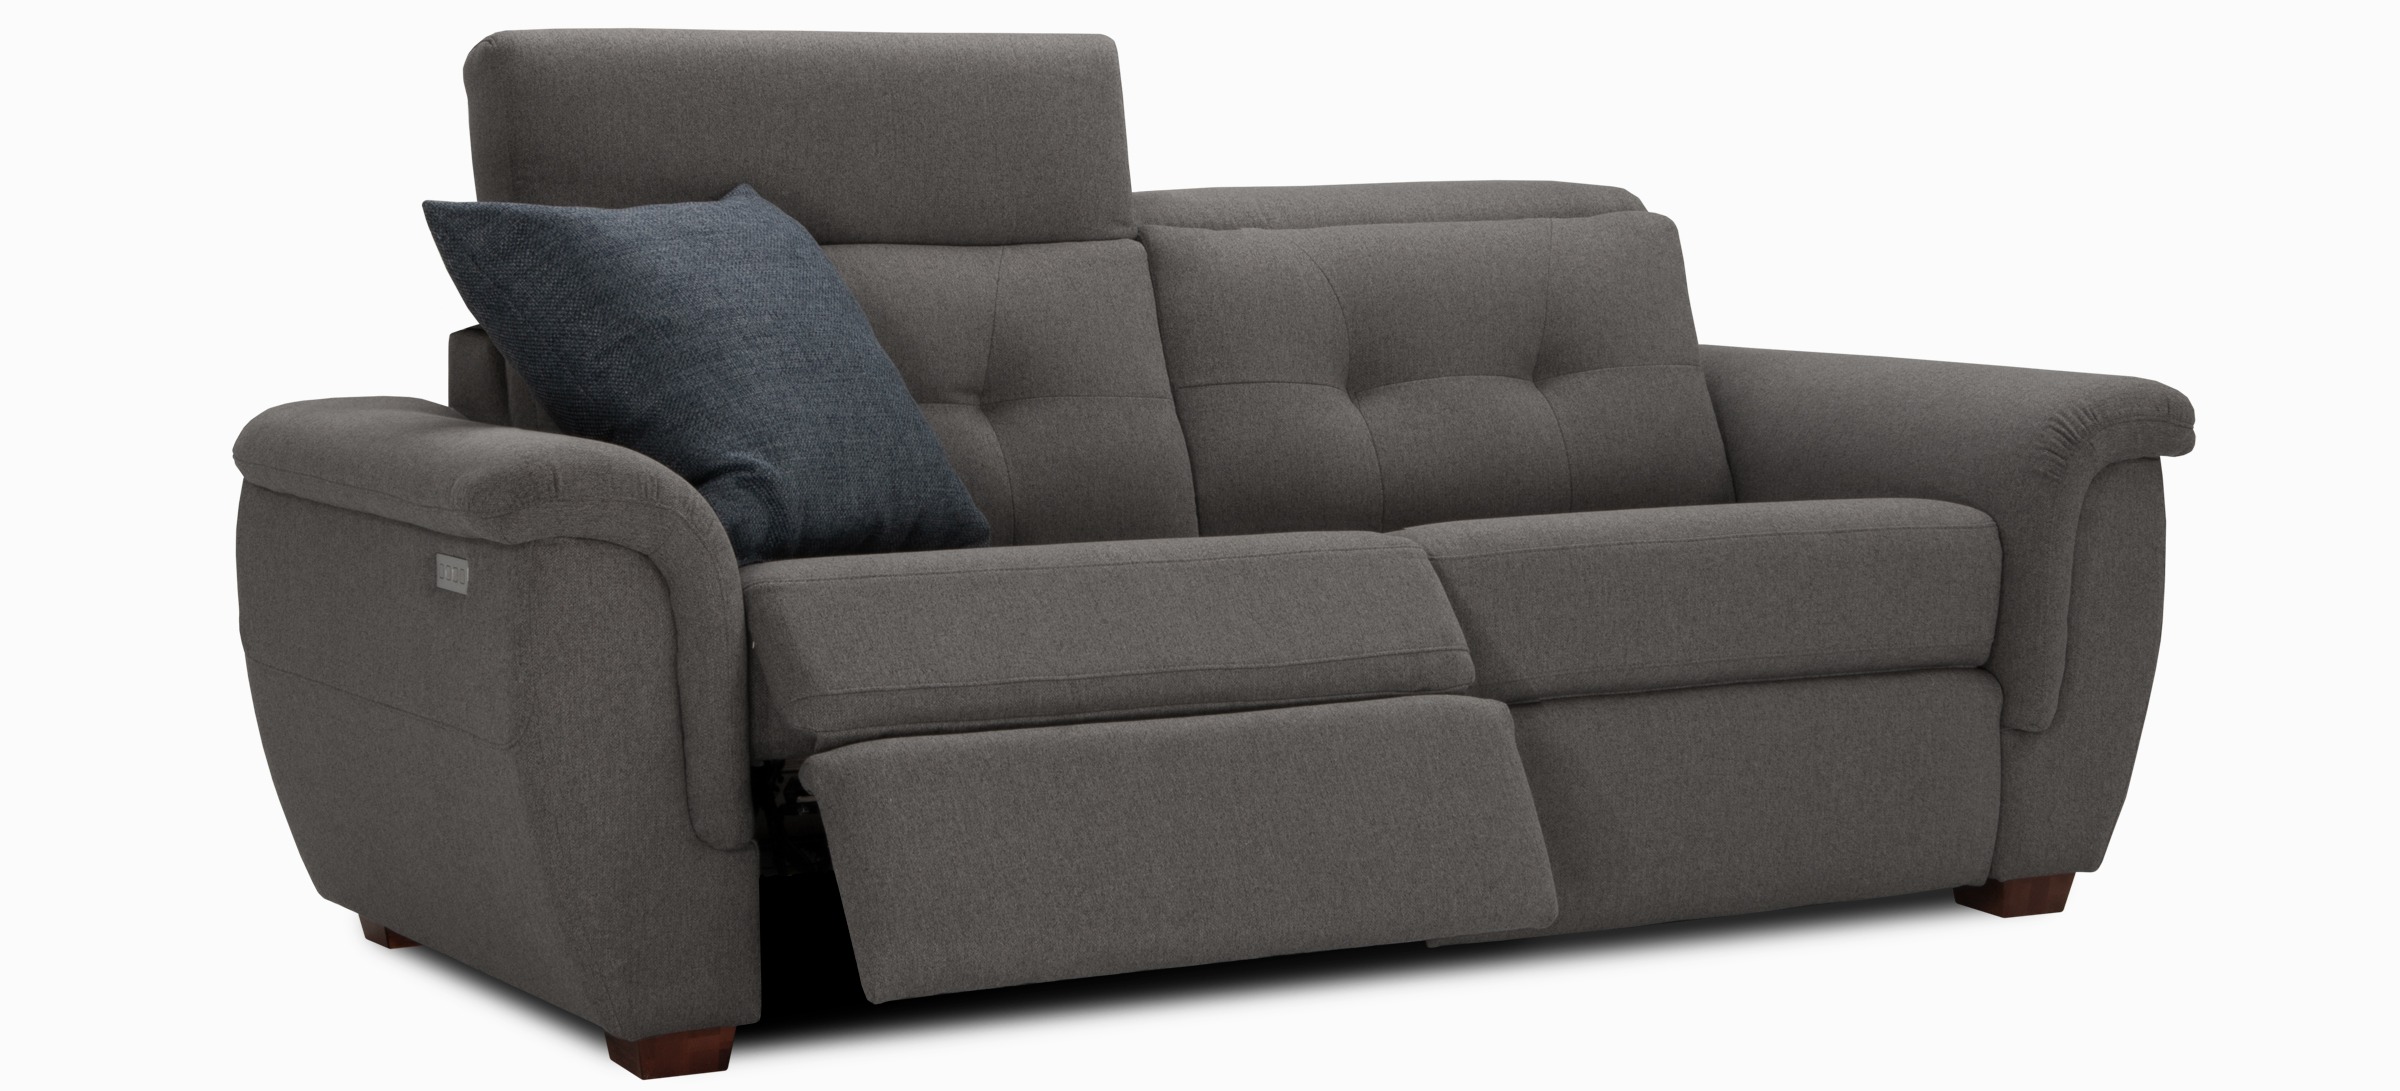 San francisco sofa apt pl dark grey side1